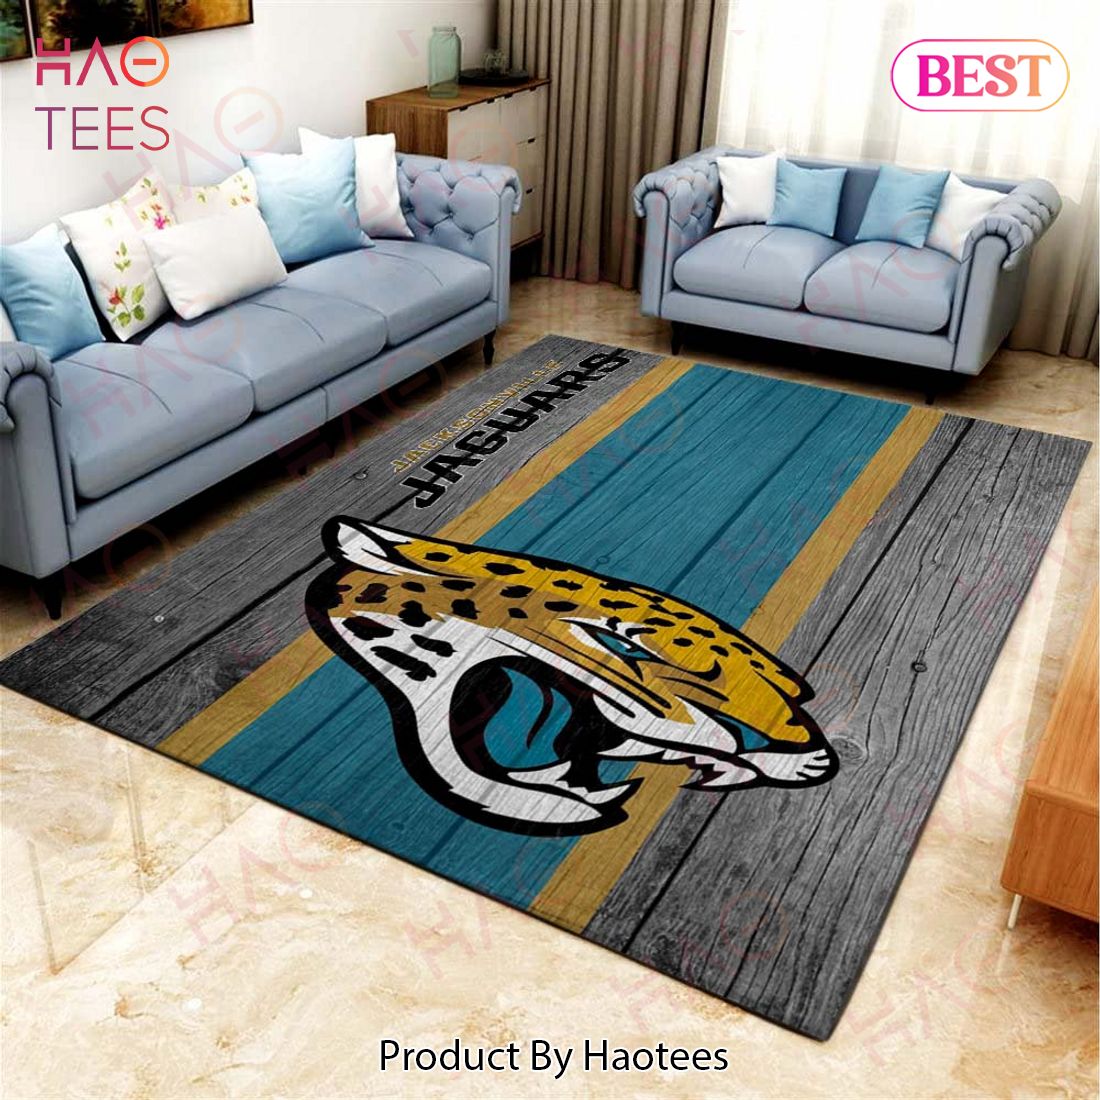 Jacksonville Jaguars Football Team Nfl On Wood Living Room Carpet Kitchen Area Rugs